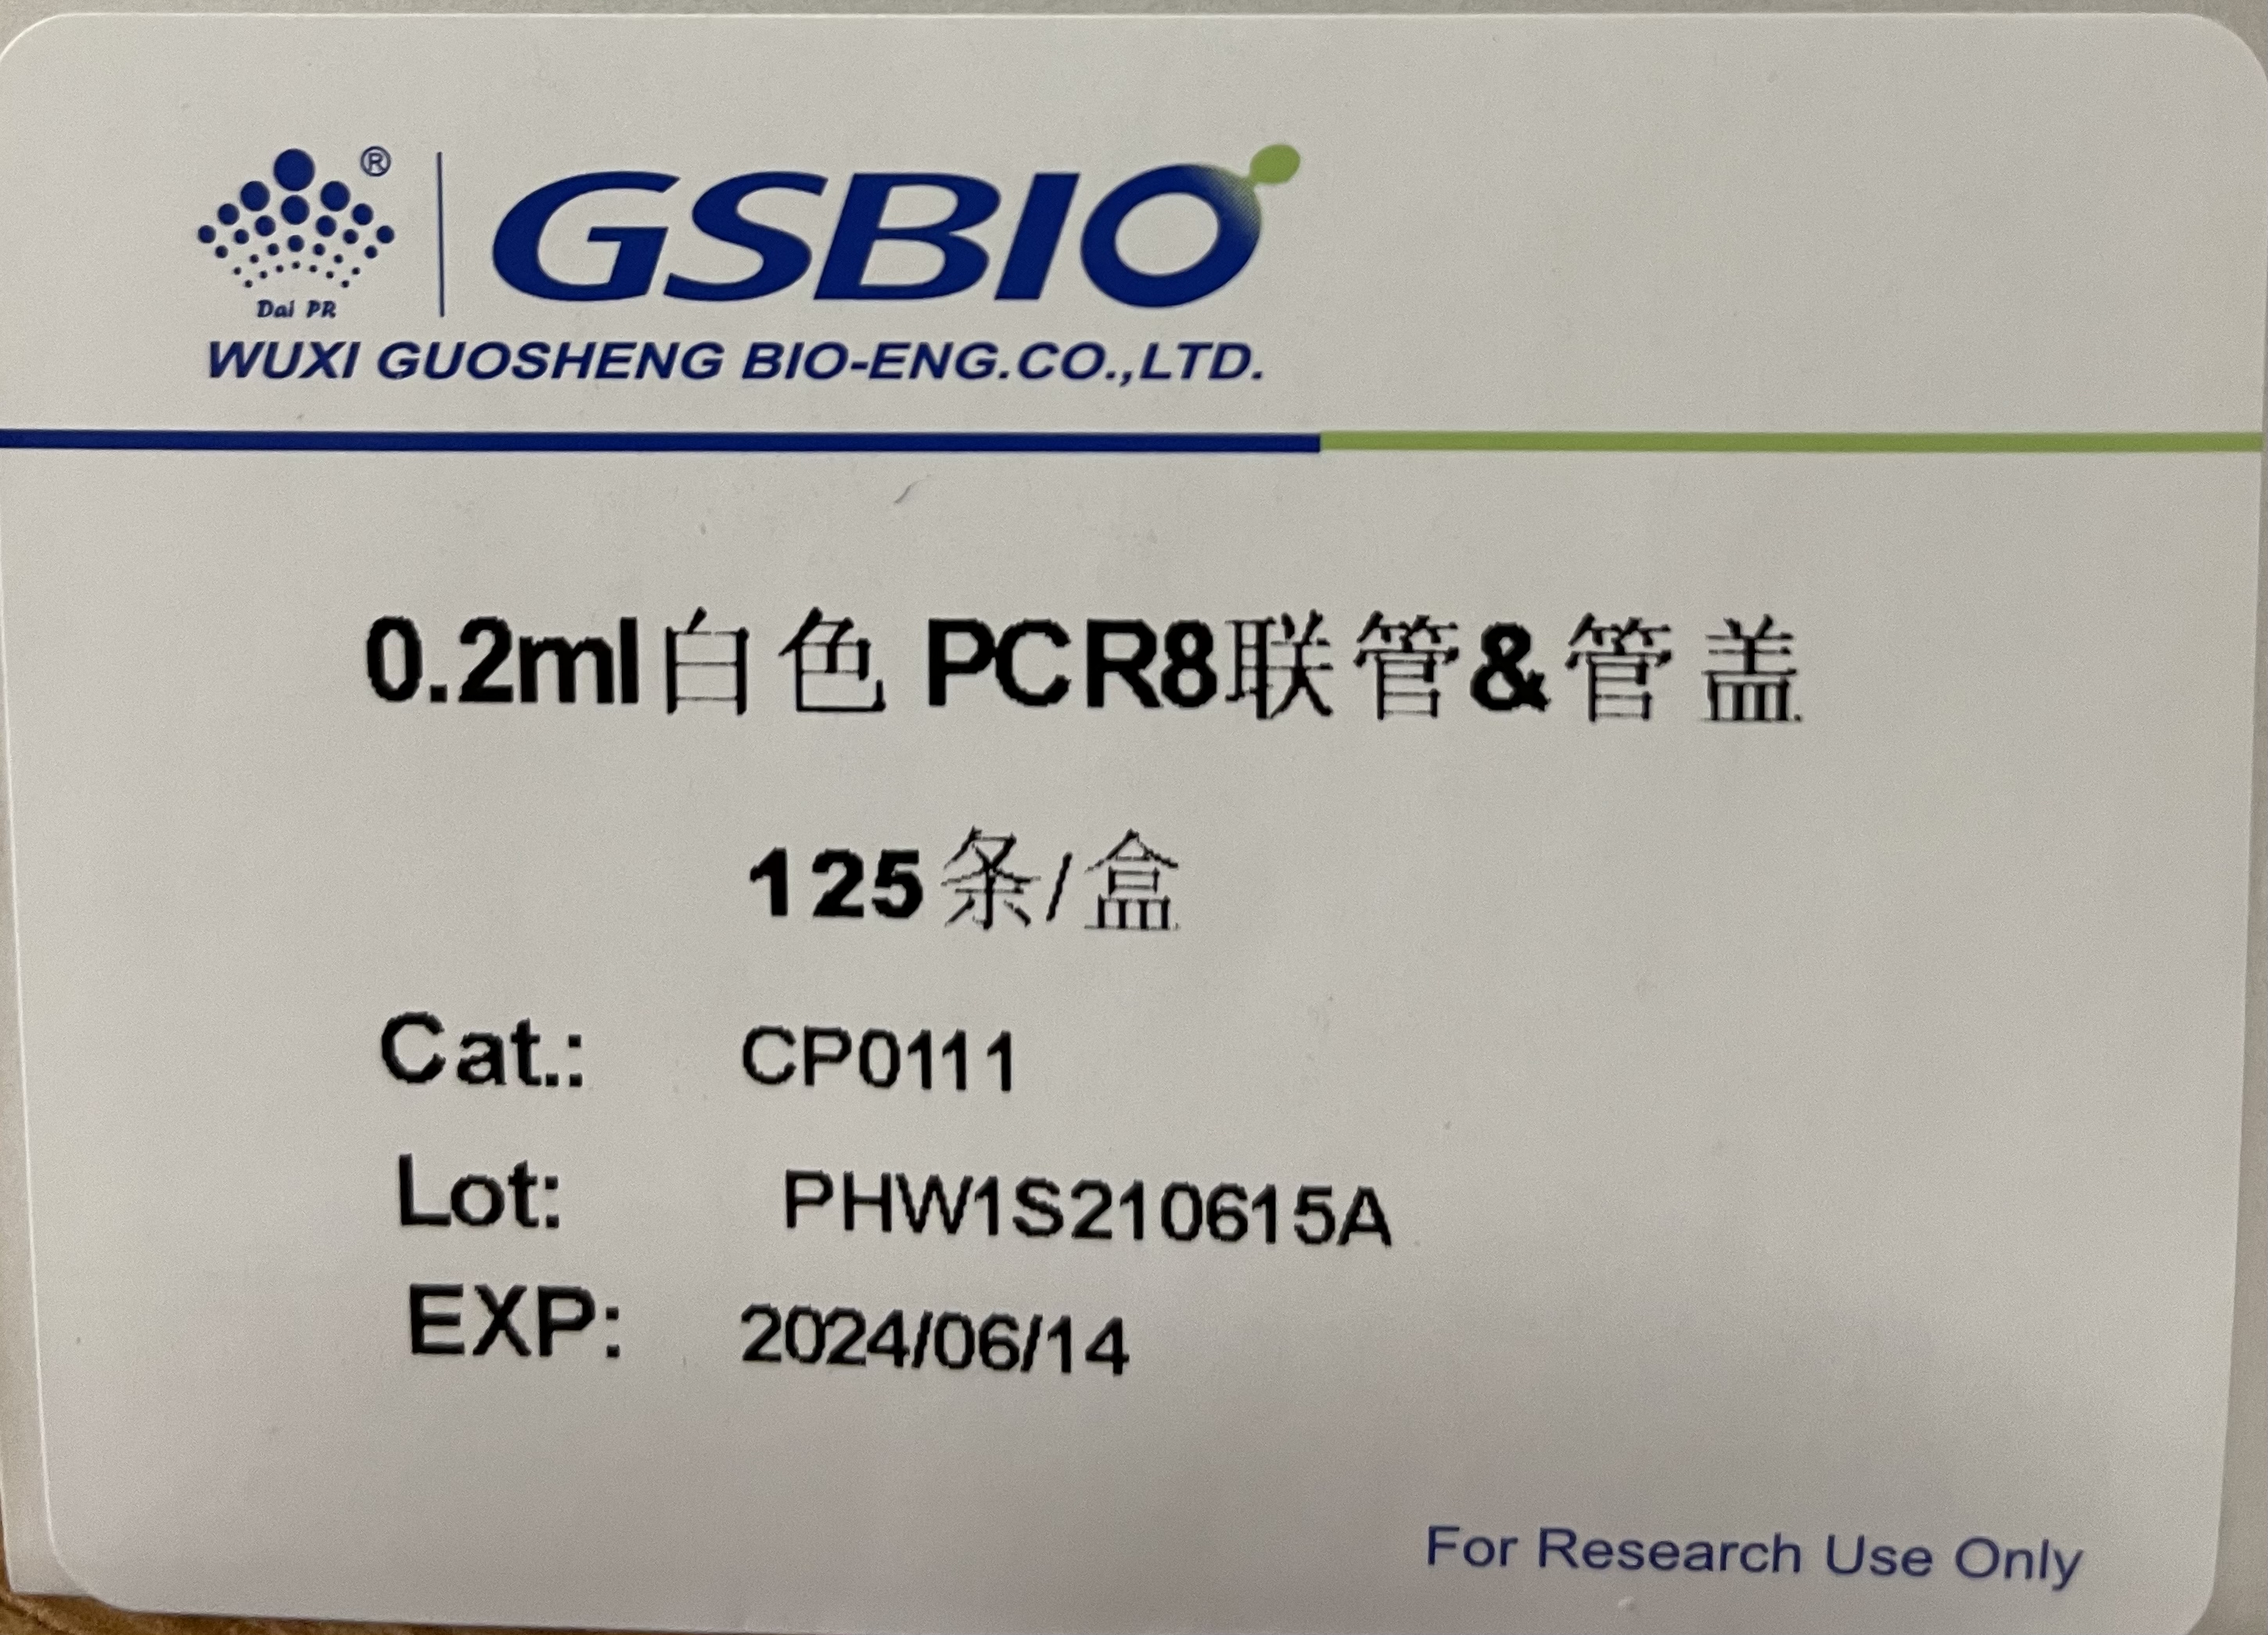 【国盛】0.2ml白色PCR8联客&管盖-云医购